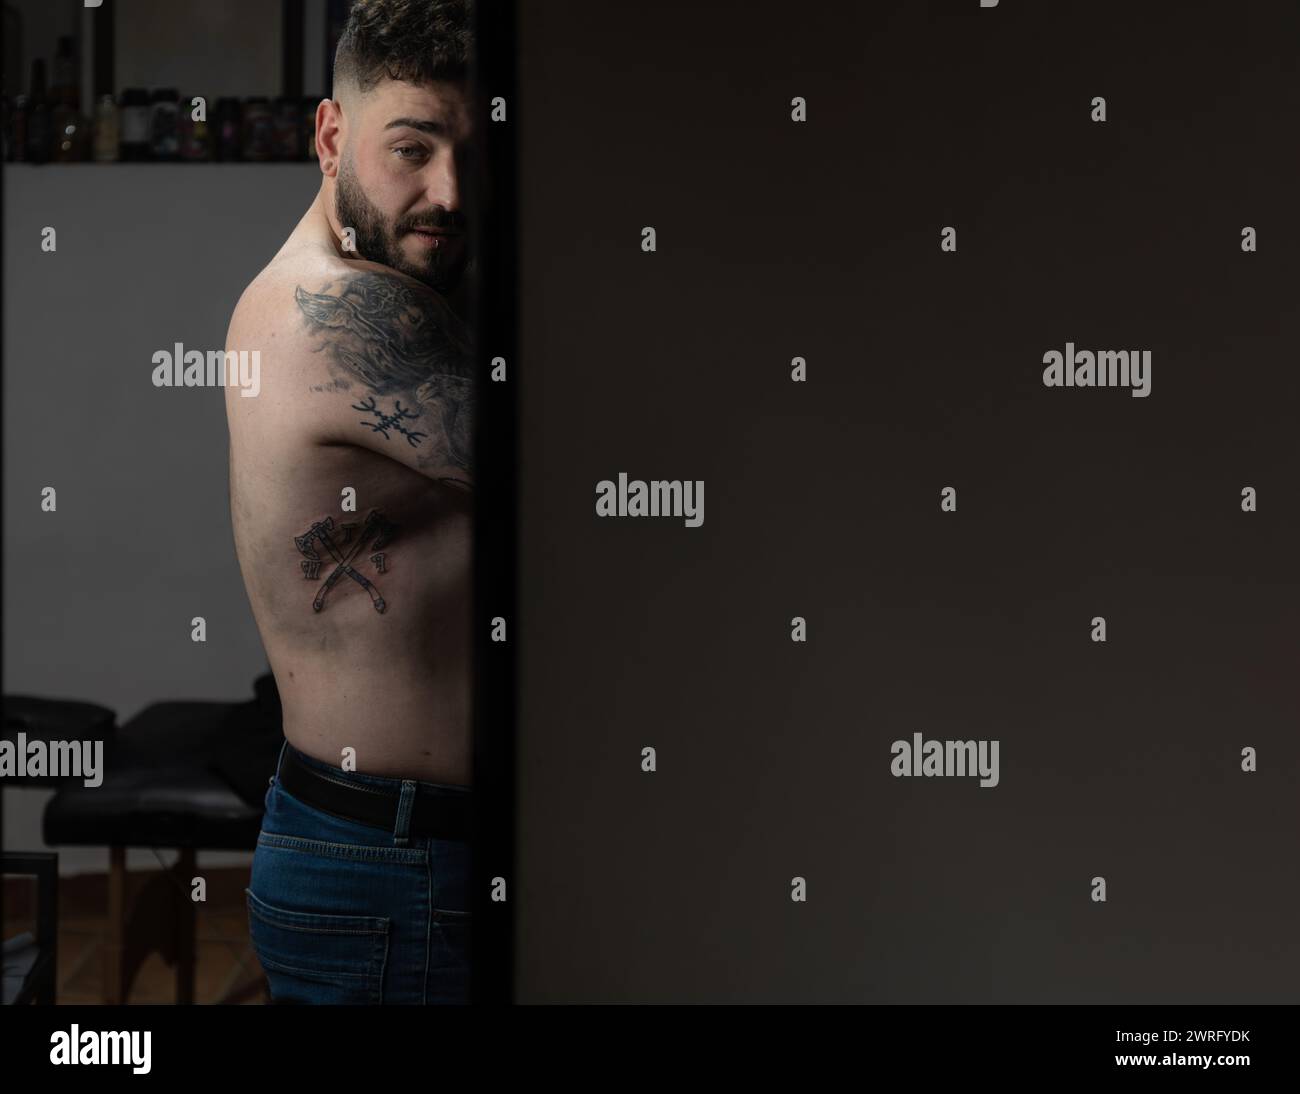 Foto orizzontale un uomo tatuato guarda indietro, la sua body art visibile in uno studio di tatuaggio sereno e poco illuminato, che evoca una narrazione di espressione personale. Poliziotto Foto Stock